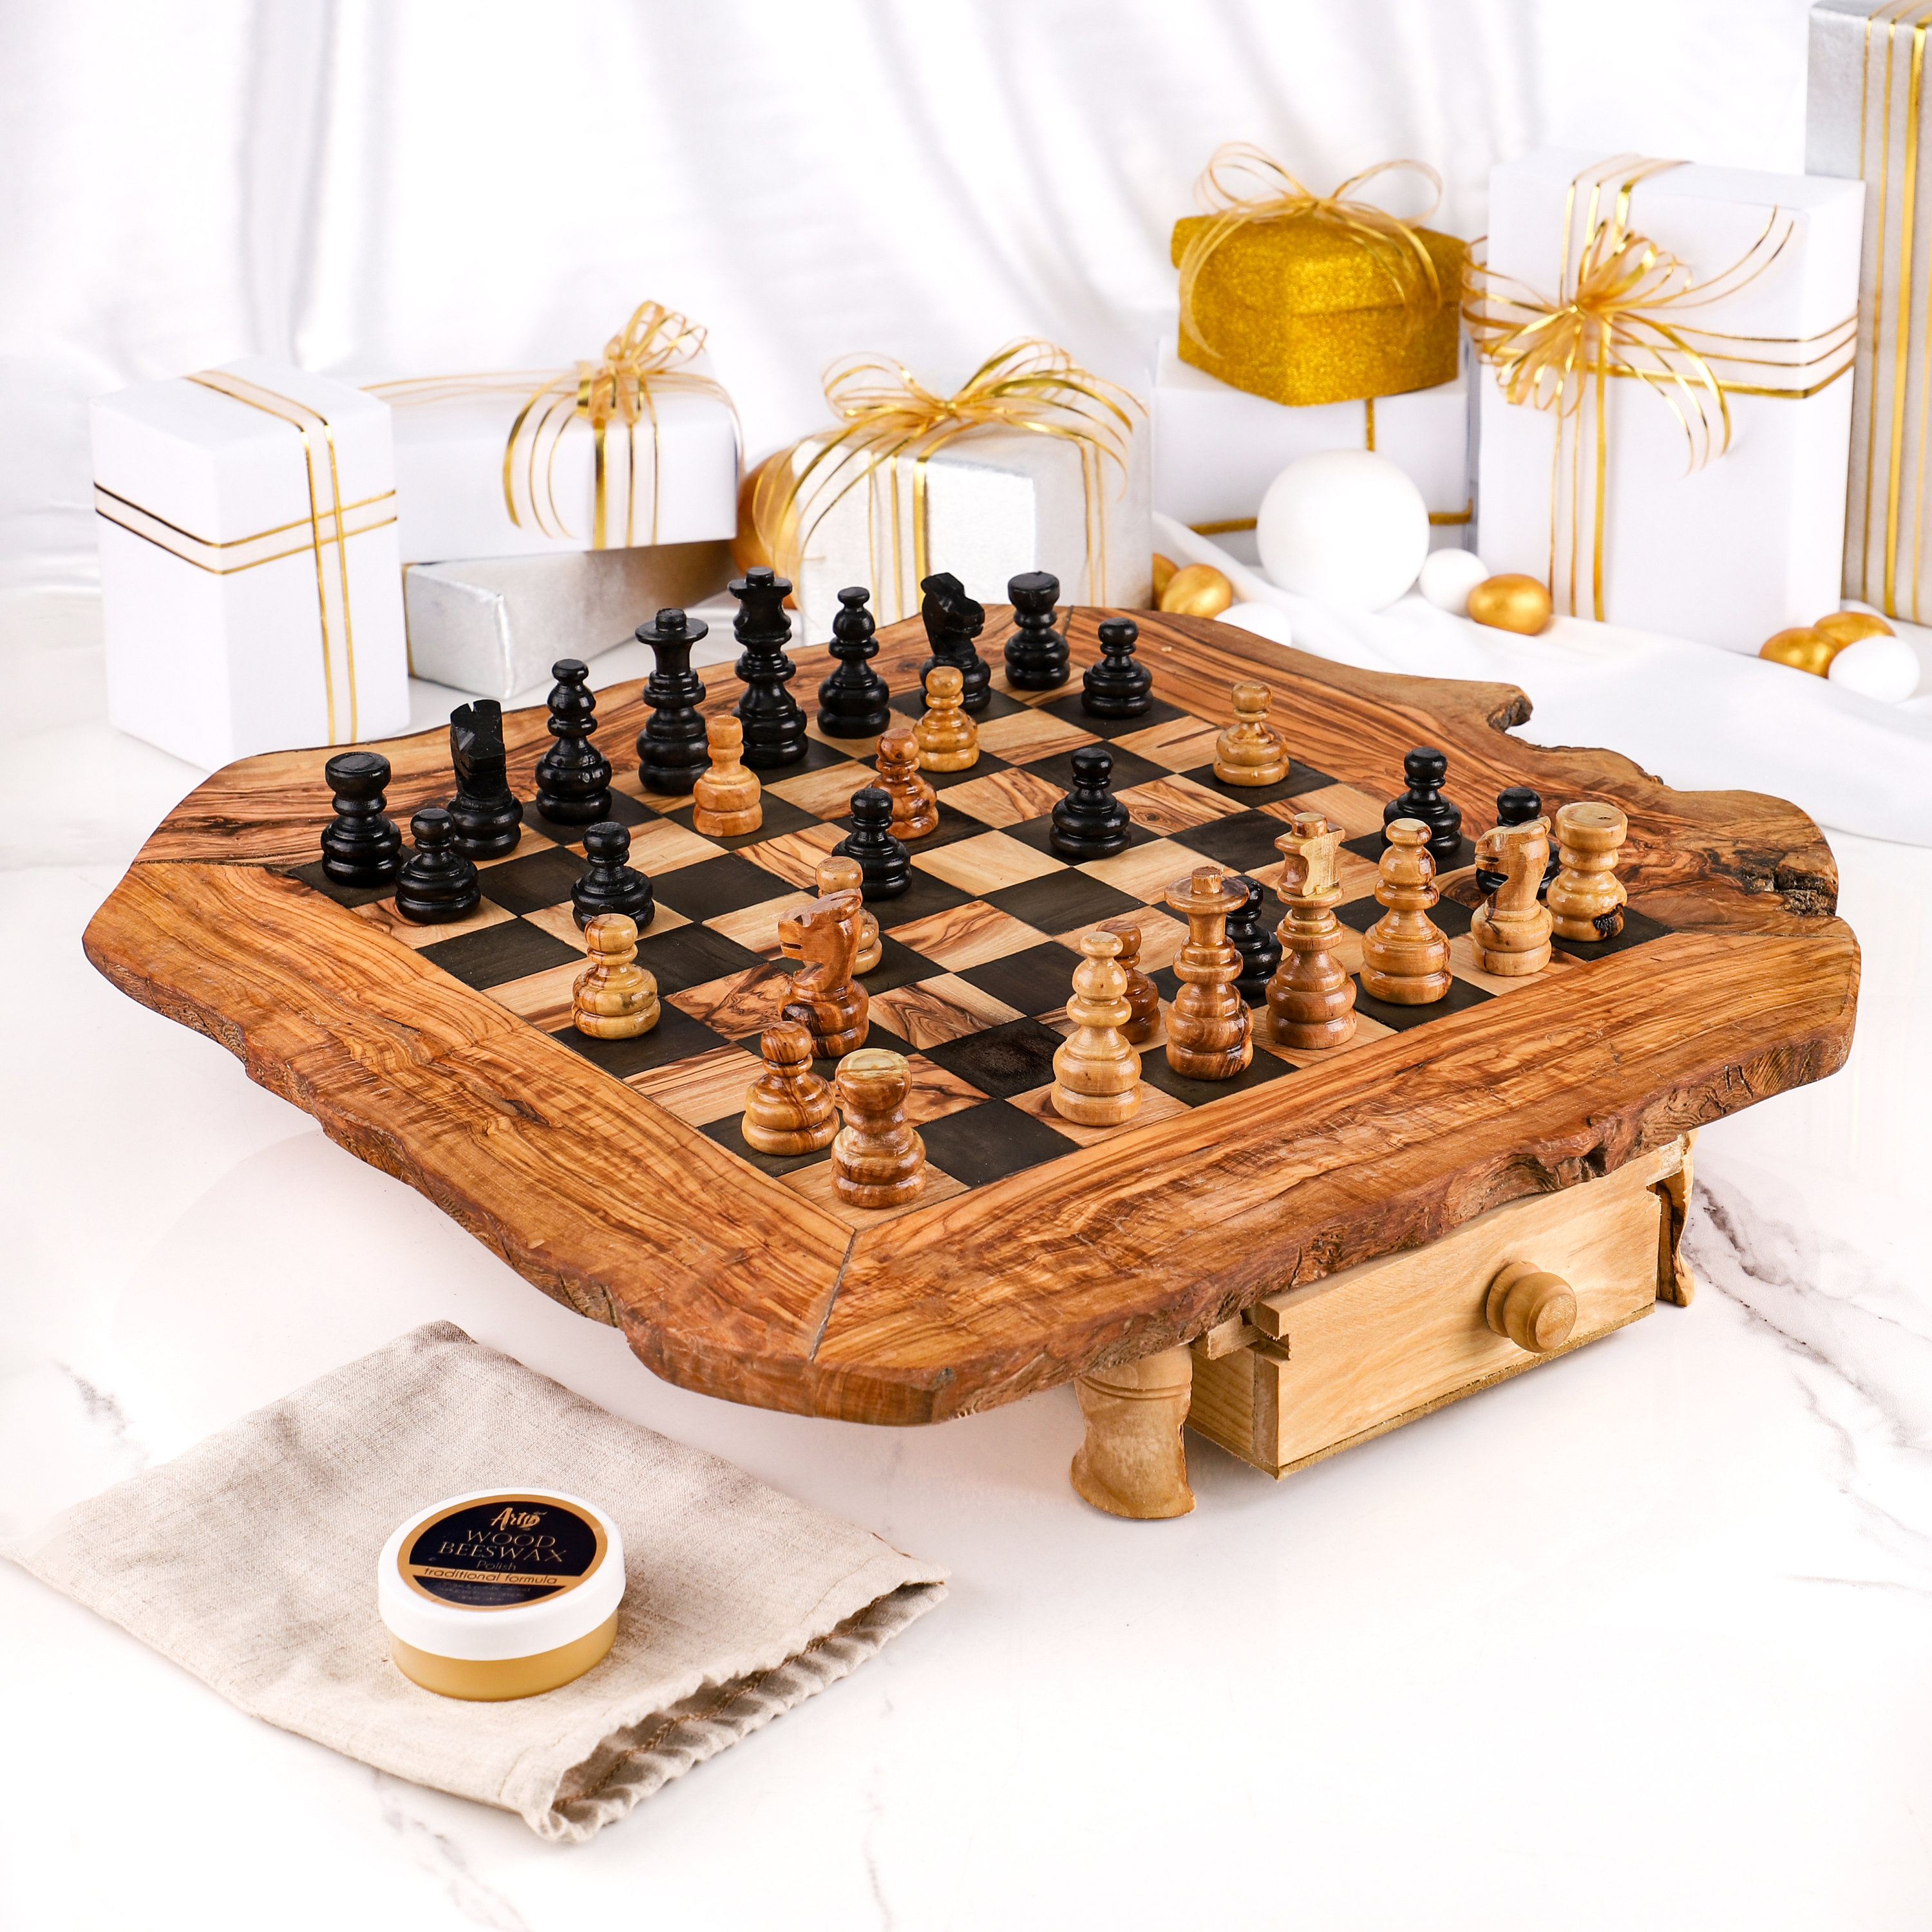 Juego de ajedrez olivenholz piezas de ajedrez rústico tablero de ajedrez talla L incl a mano 